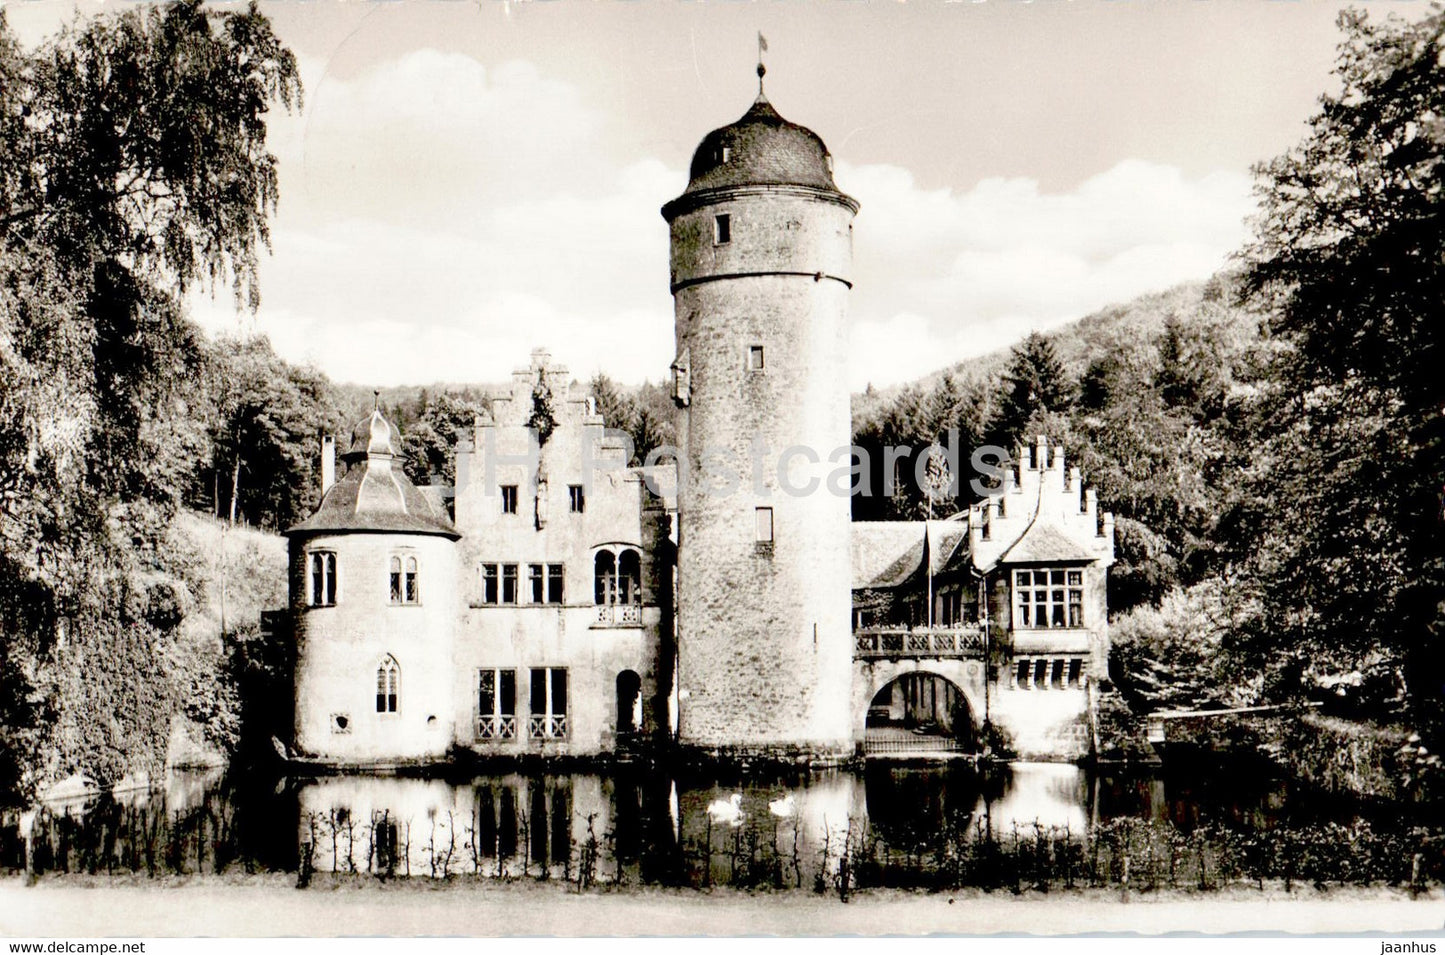 Schloss Mespelbrunn im Spessart - castle - 1960 - Germany - used - JH Postcards